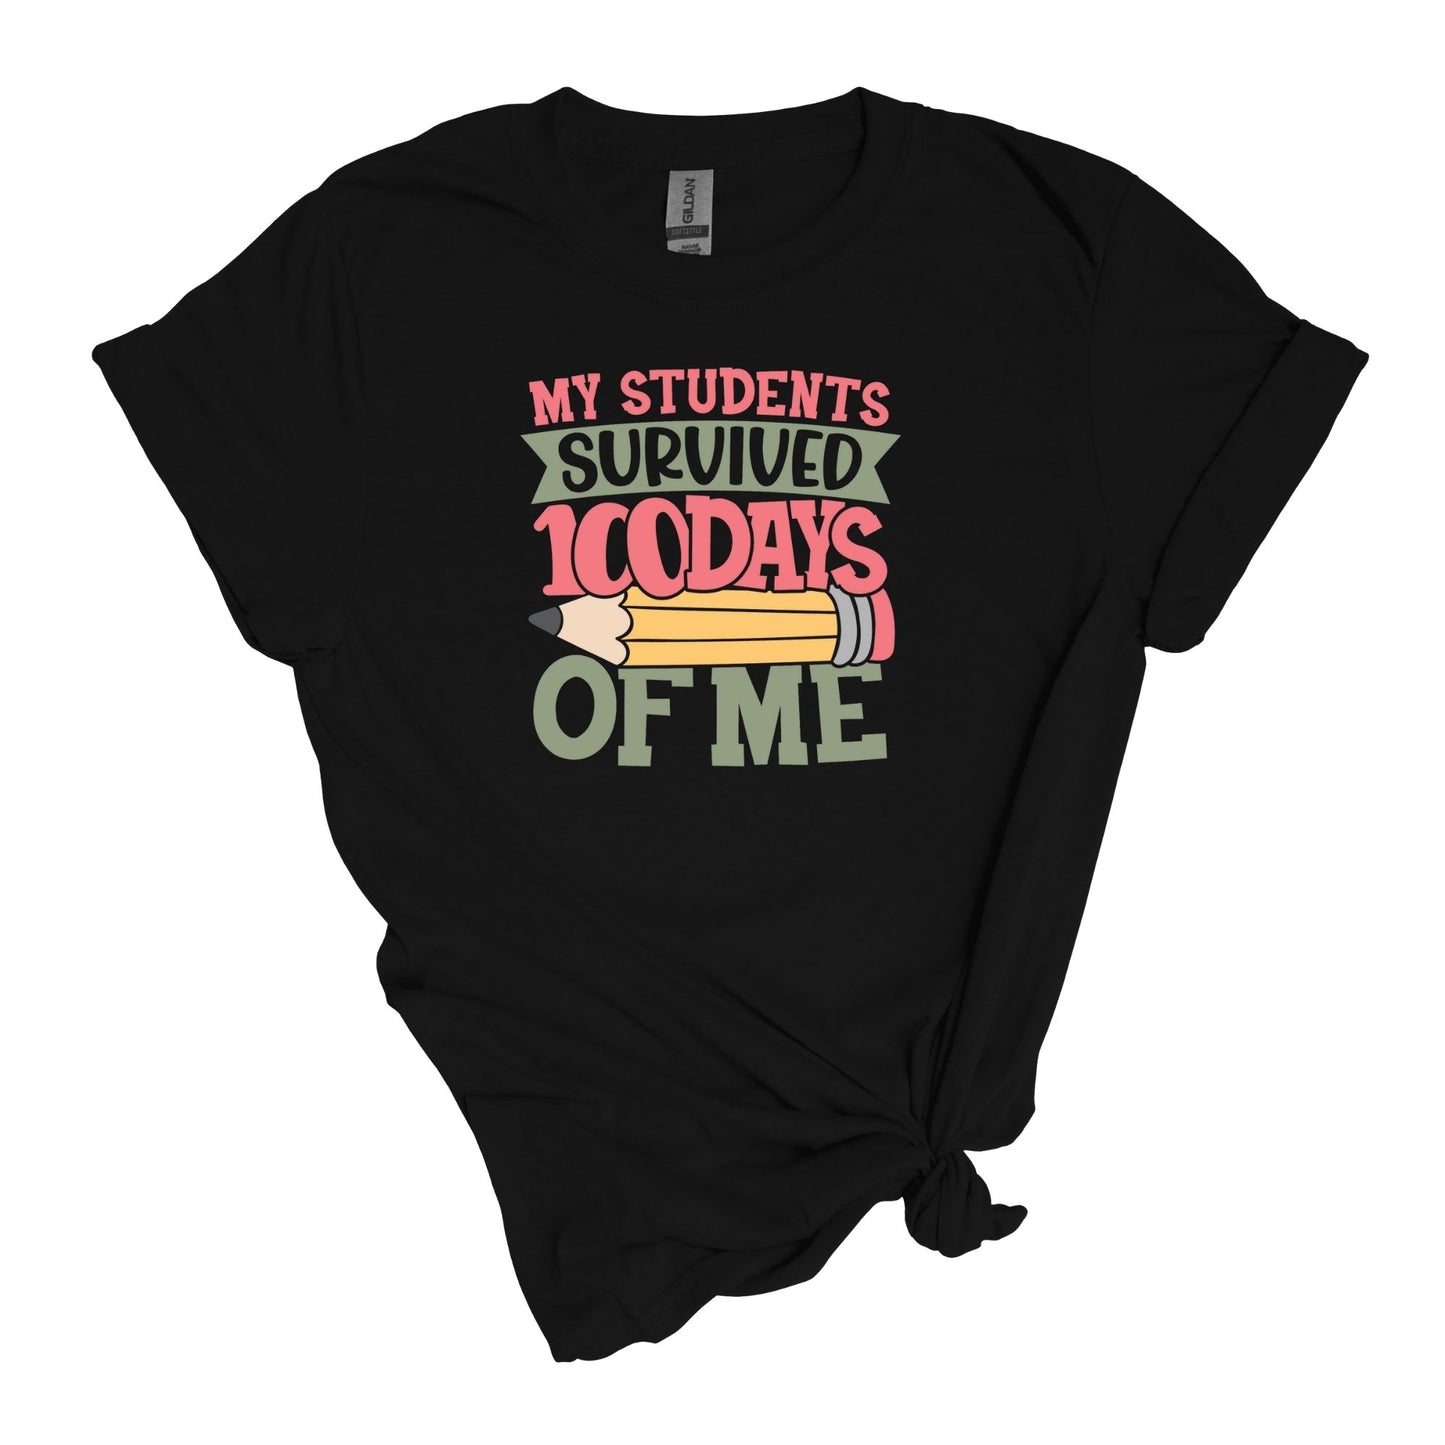 ¡Mis alumnos sobrevivieron 100 días de mí! - Camisa para profesores - Camiseta unisex para adultos de estilo suave 